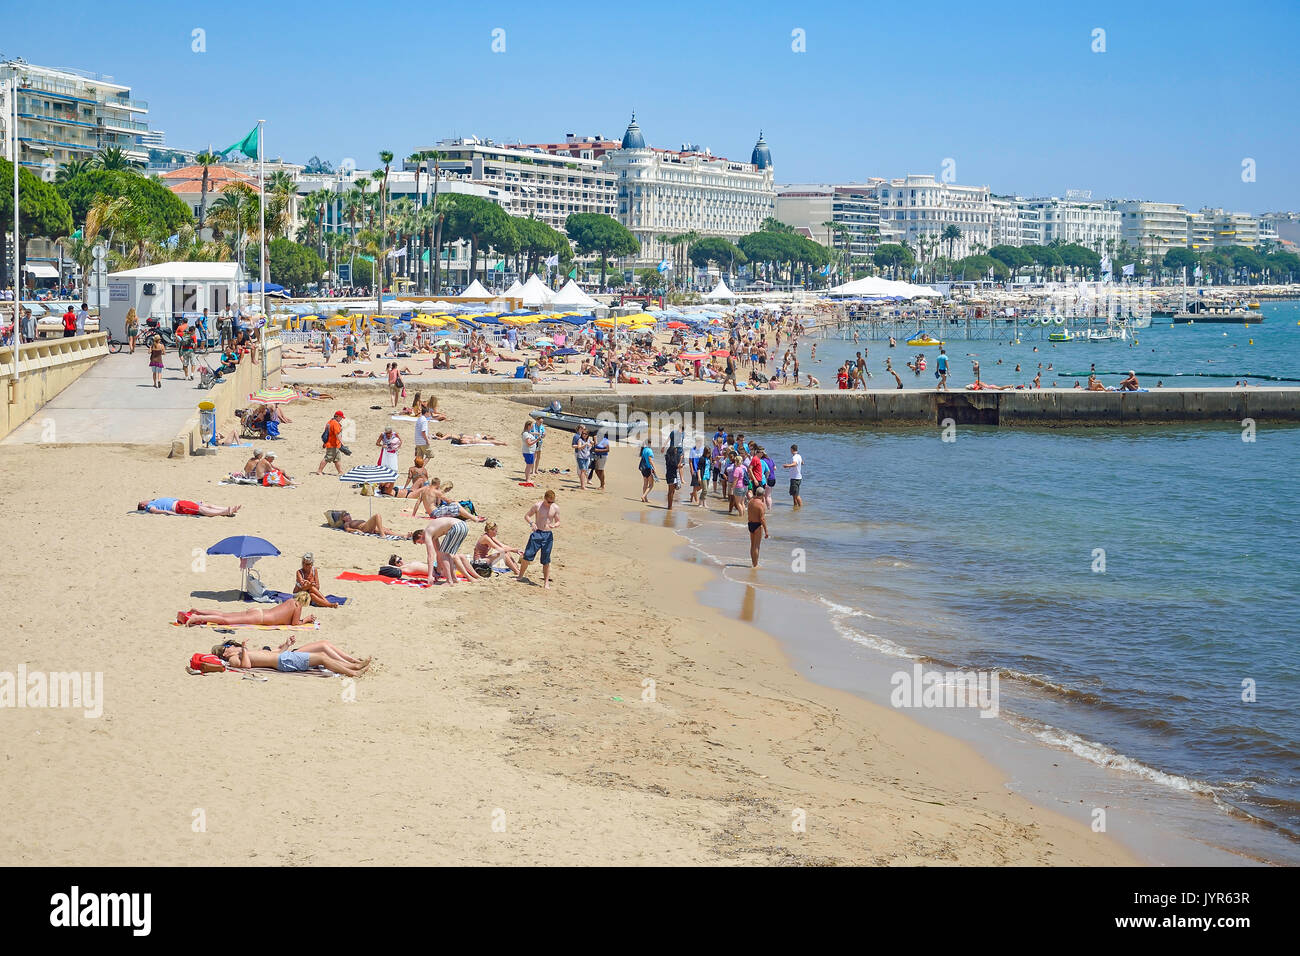 Plage Publique (plage publique), Cannes, Côte d'Azur, Alpes-Maritimes, Provence-Alpes-Côte d'Azur, France Banque D'Images